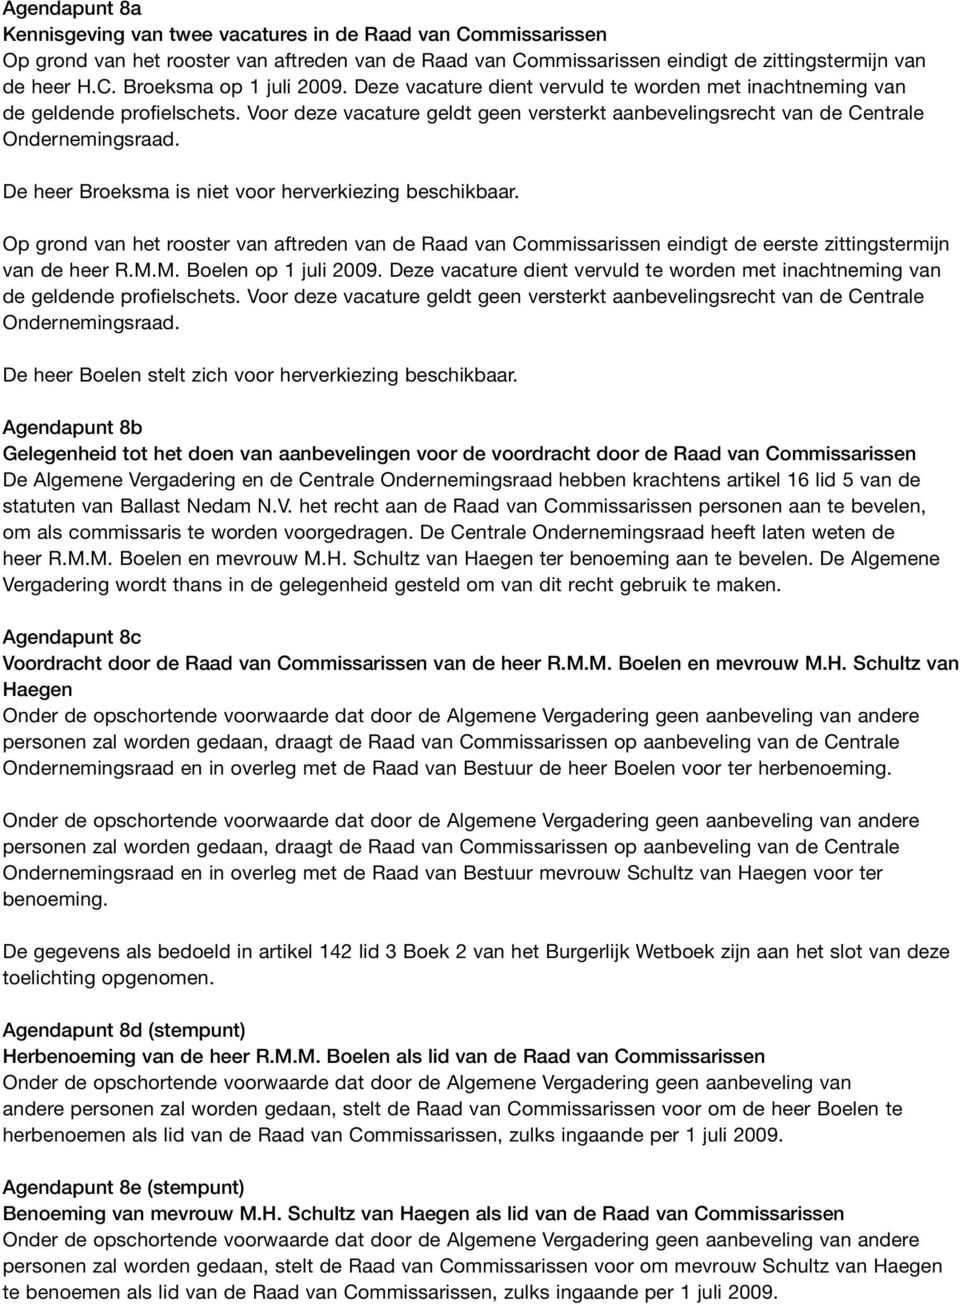 De heer Broeksma is niet voor herverkiezing beschikbaar. Op grond van het rooster van aftreden van de Raad van Commissarissen eindigt de eerste zittingstermijn van de heer R.M.M. Boelen op 1 juli 2009.